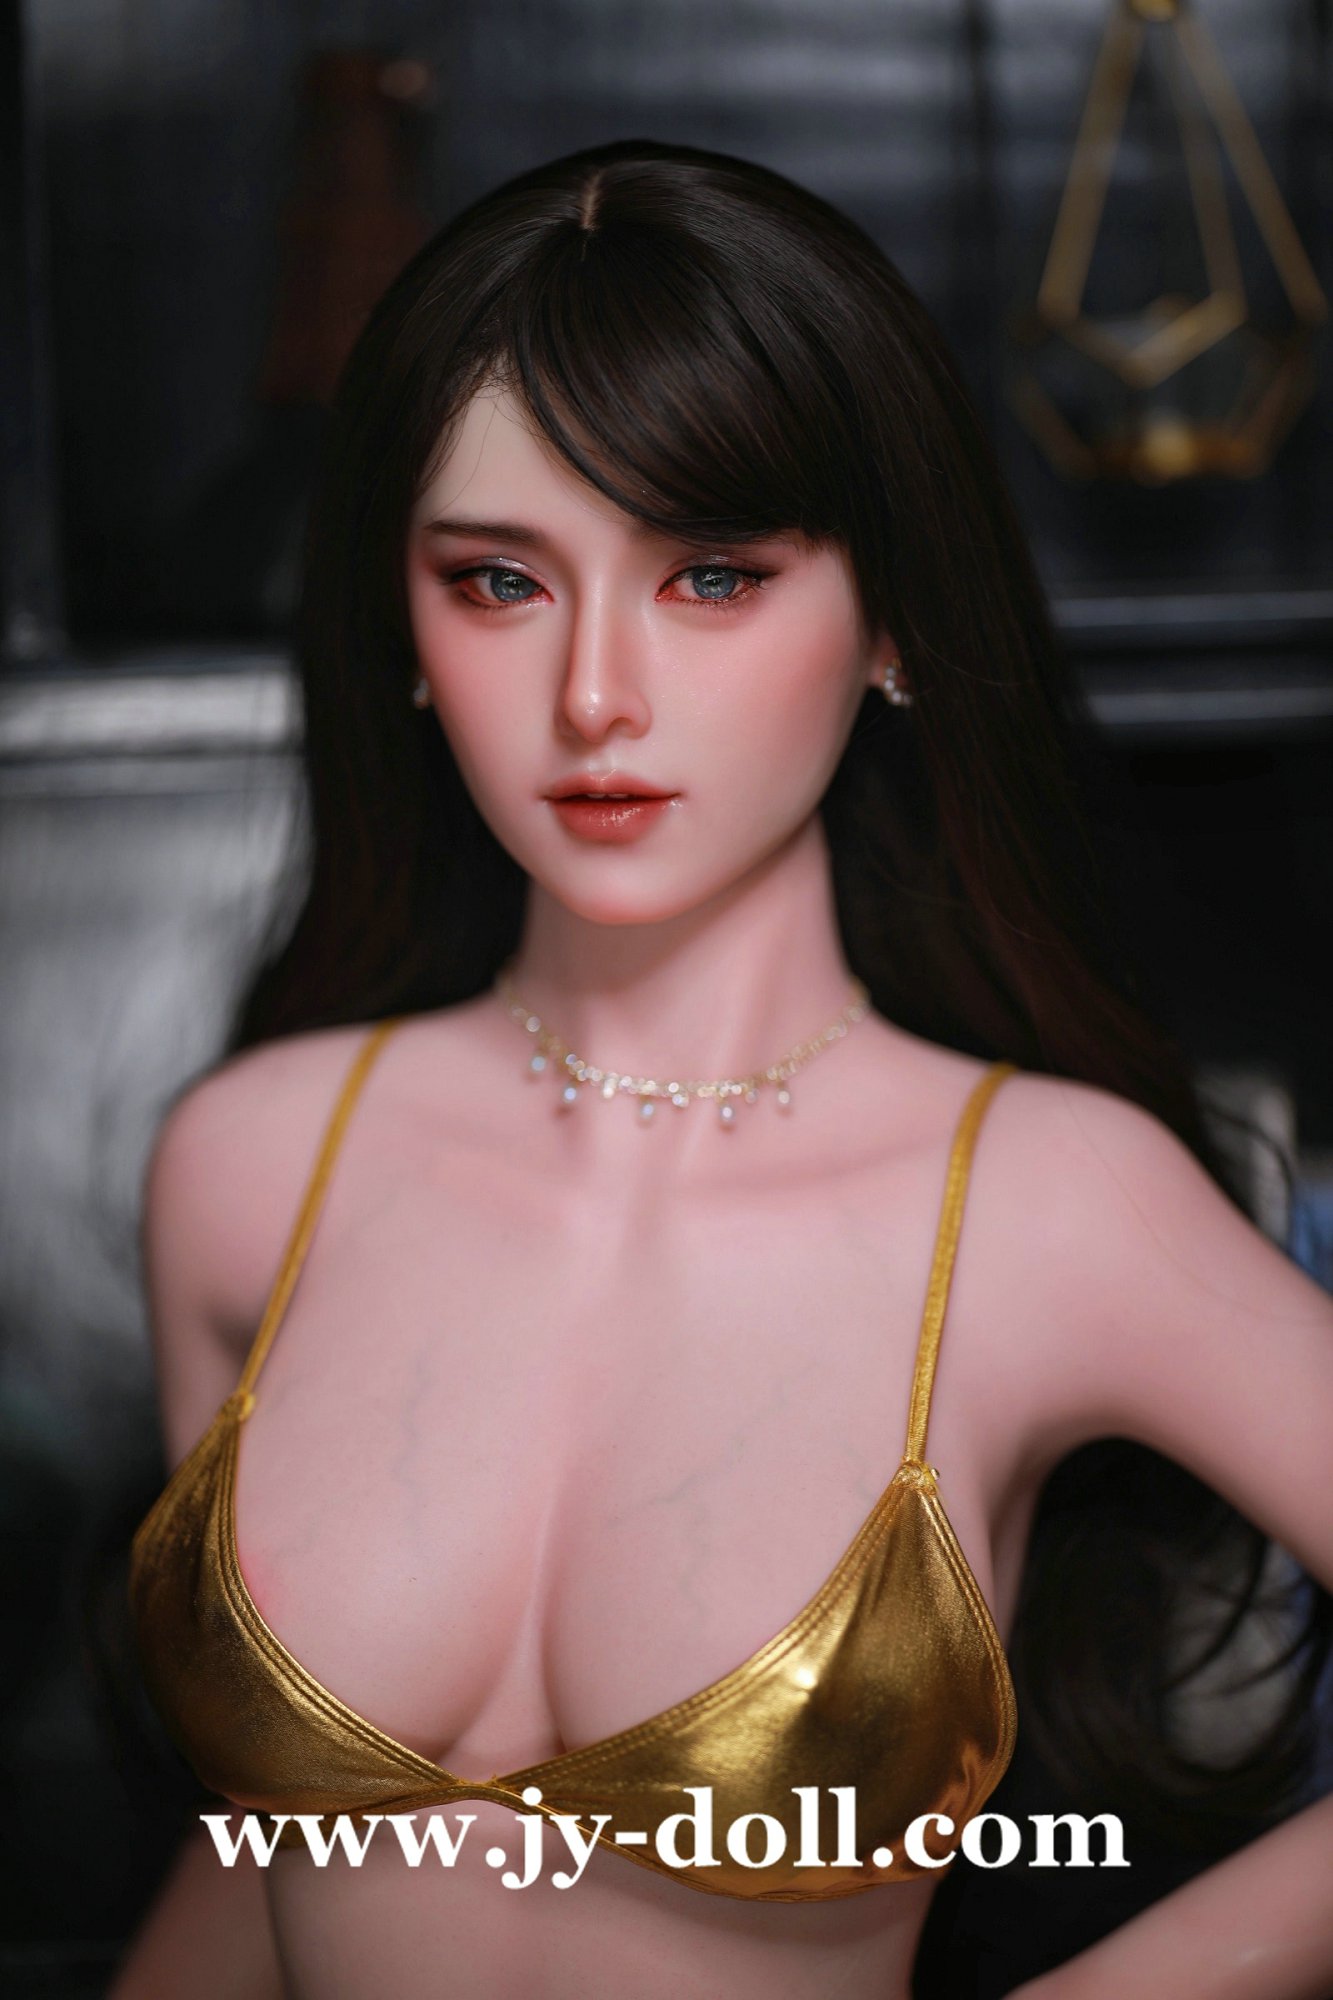 JY Doll 168cm full silicone big boobs love doll Shu Ya